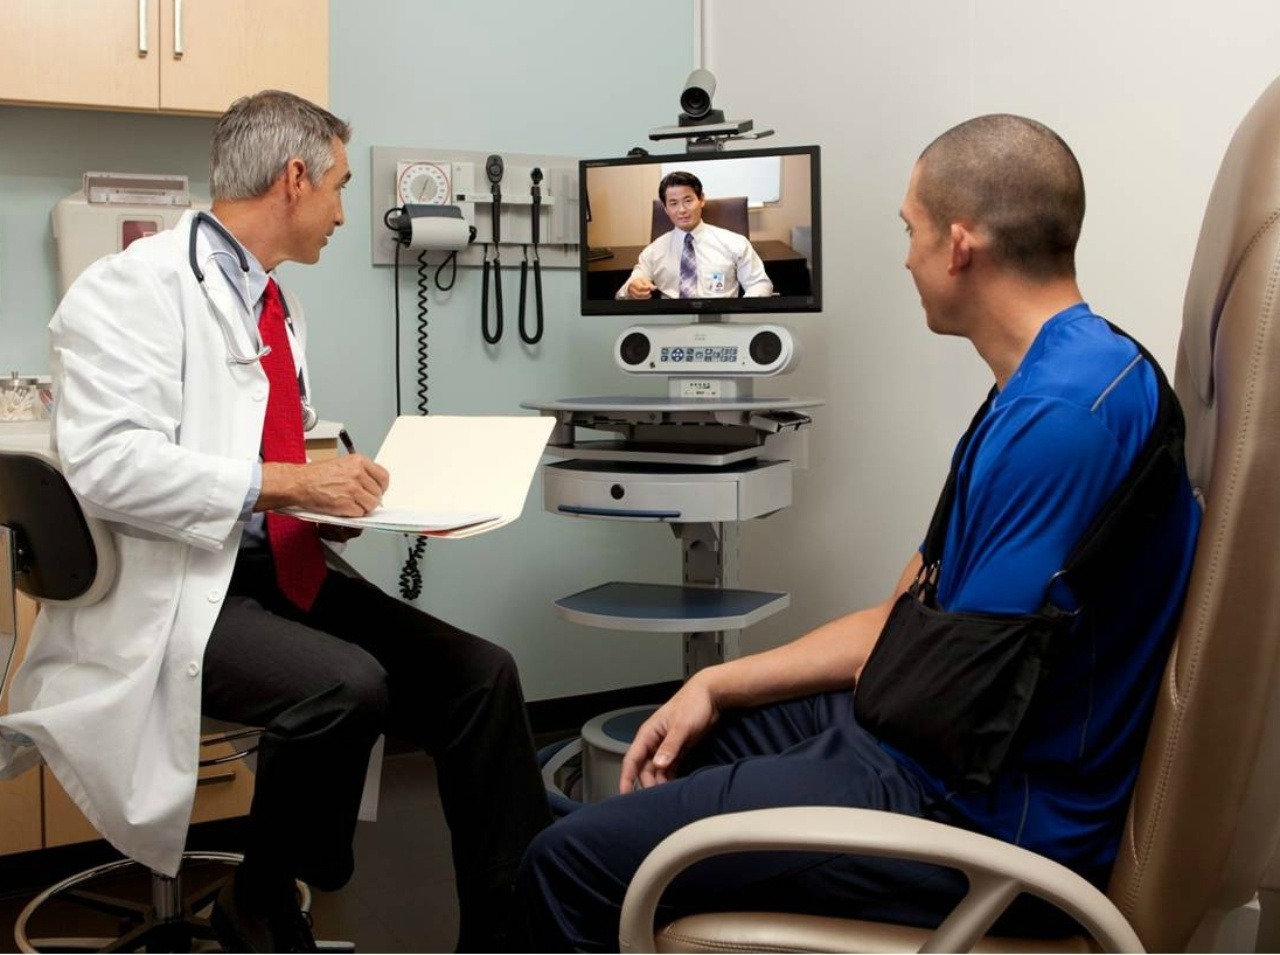 Možno budeme onedlho komunikovať s doktormi len cez obrazovku na diaľku.